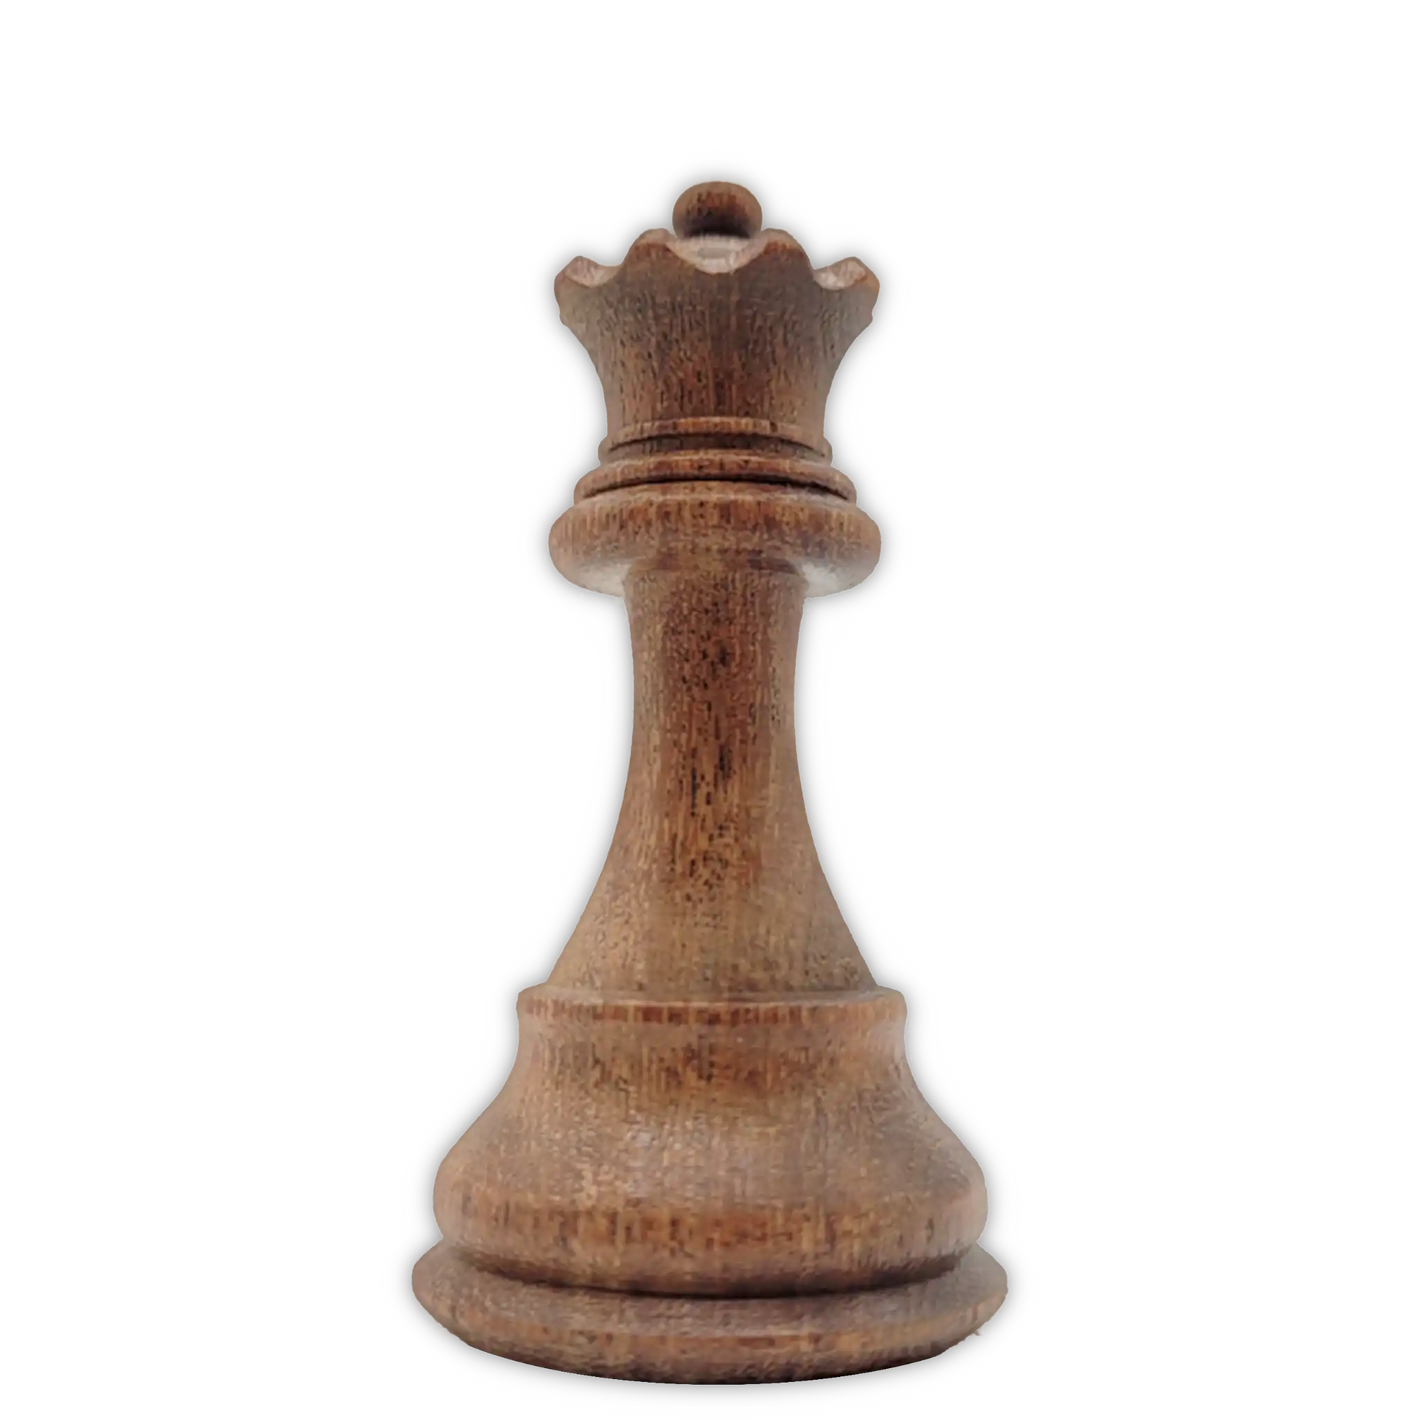 Chess Chivalry, Schachsets, Schachfiguren